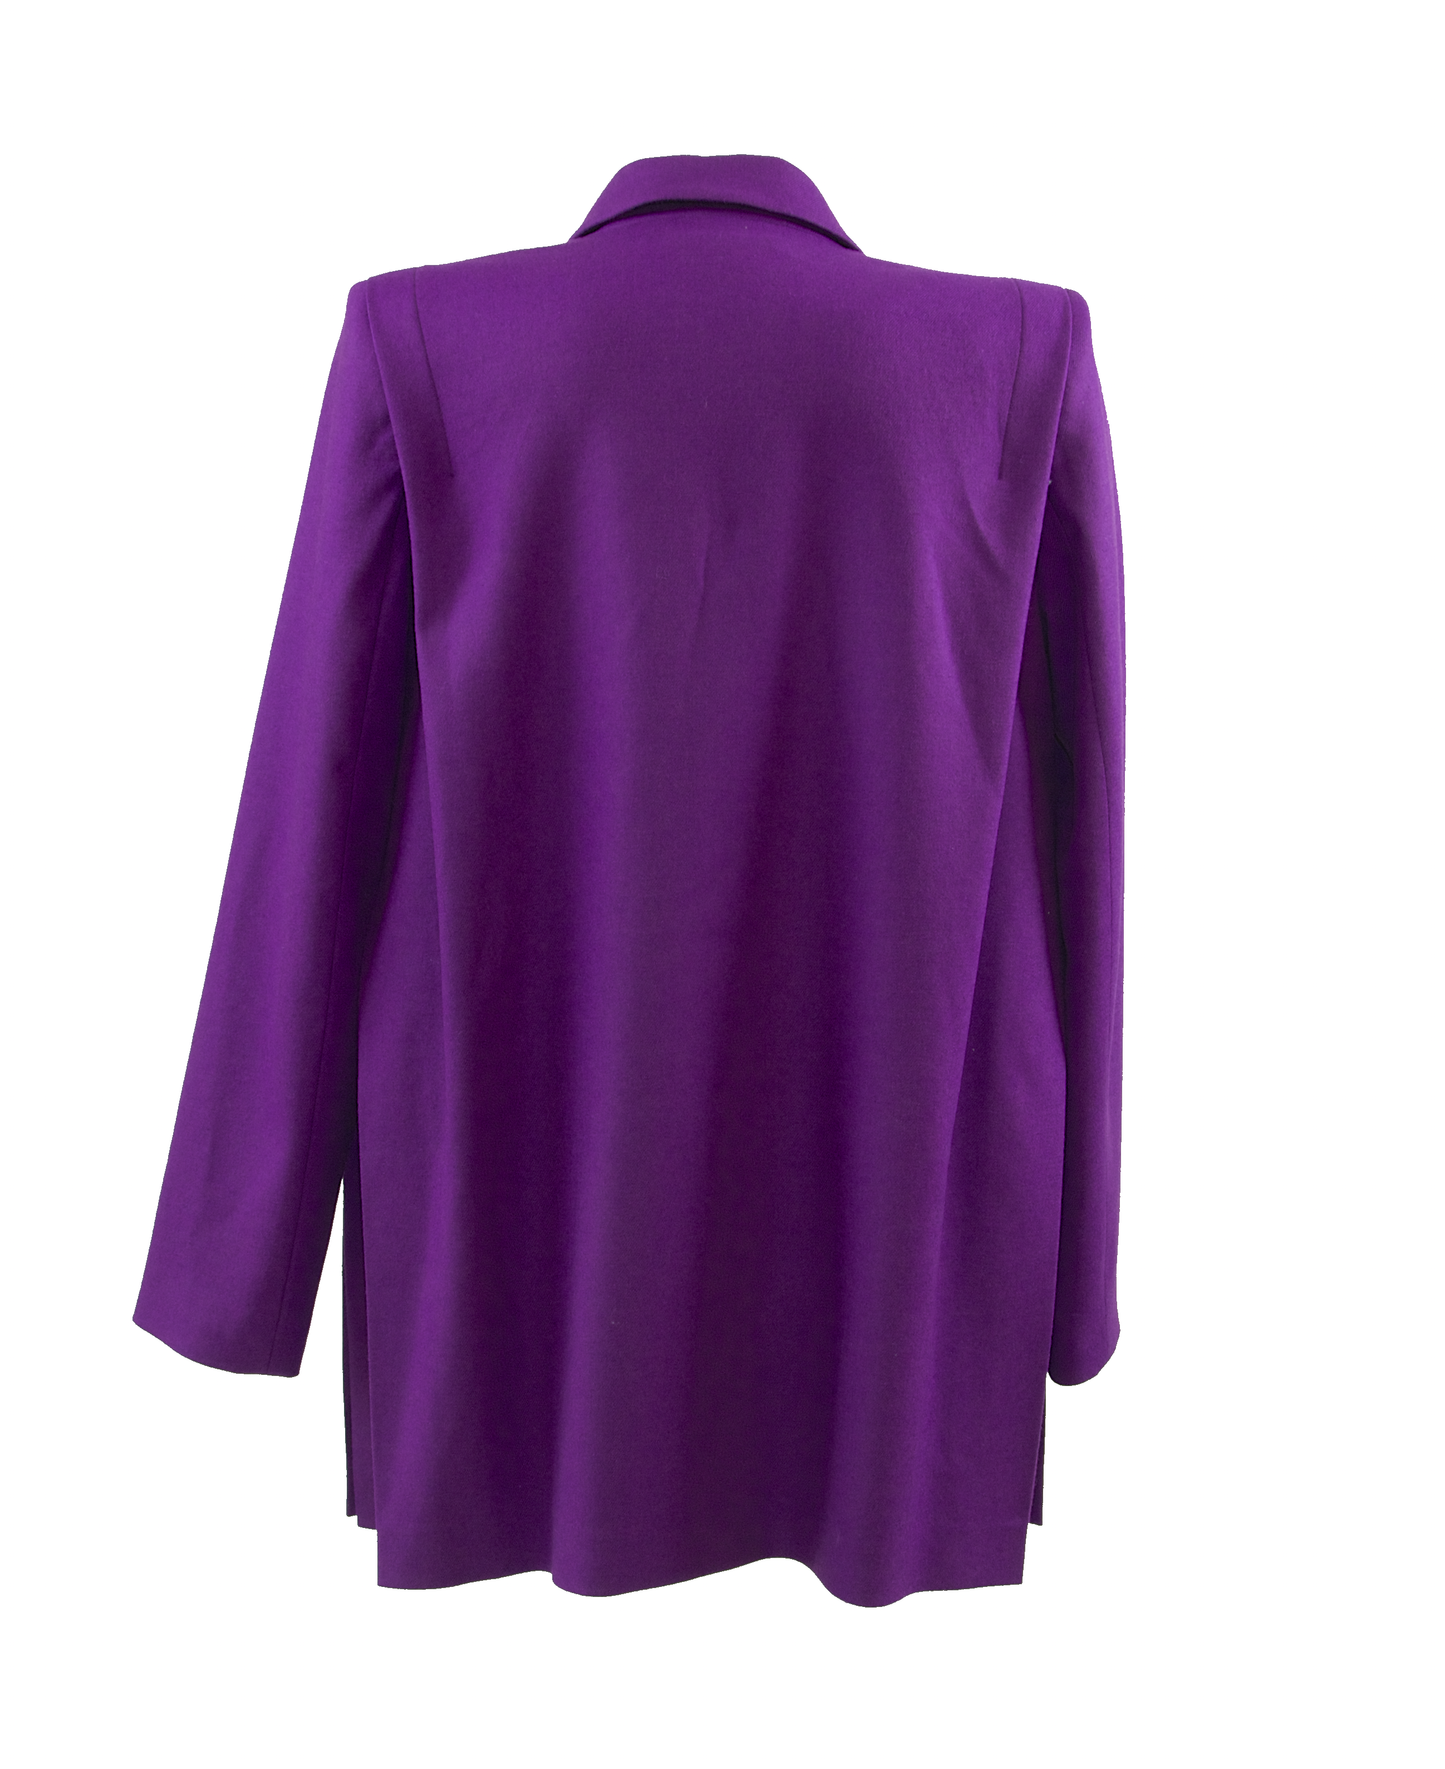 Oversized blazer in purple